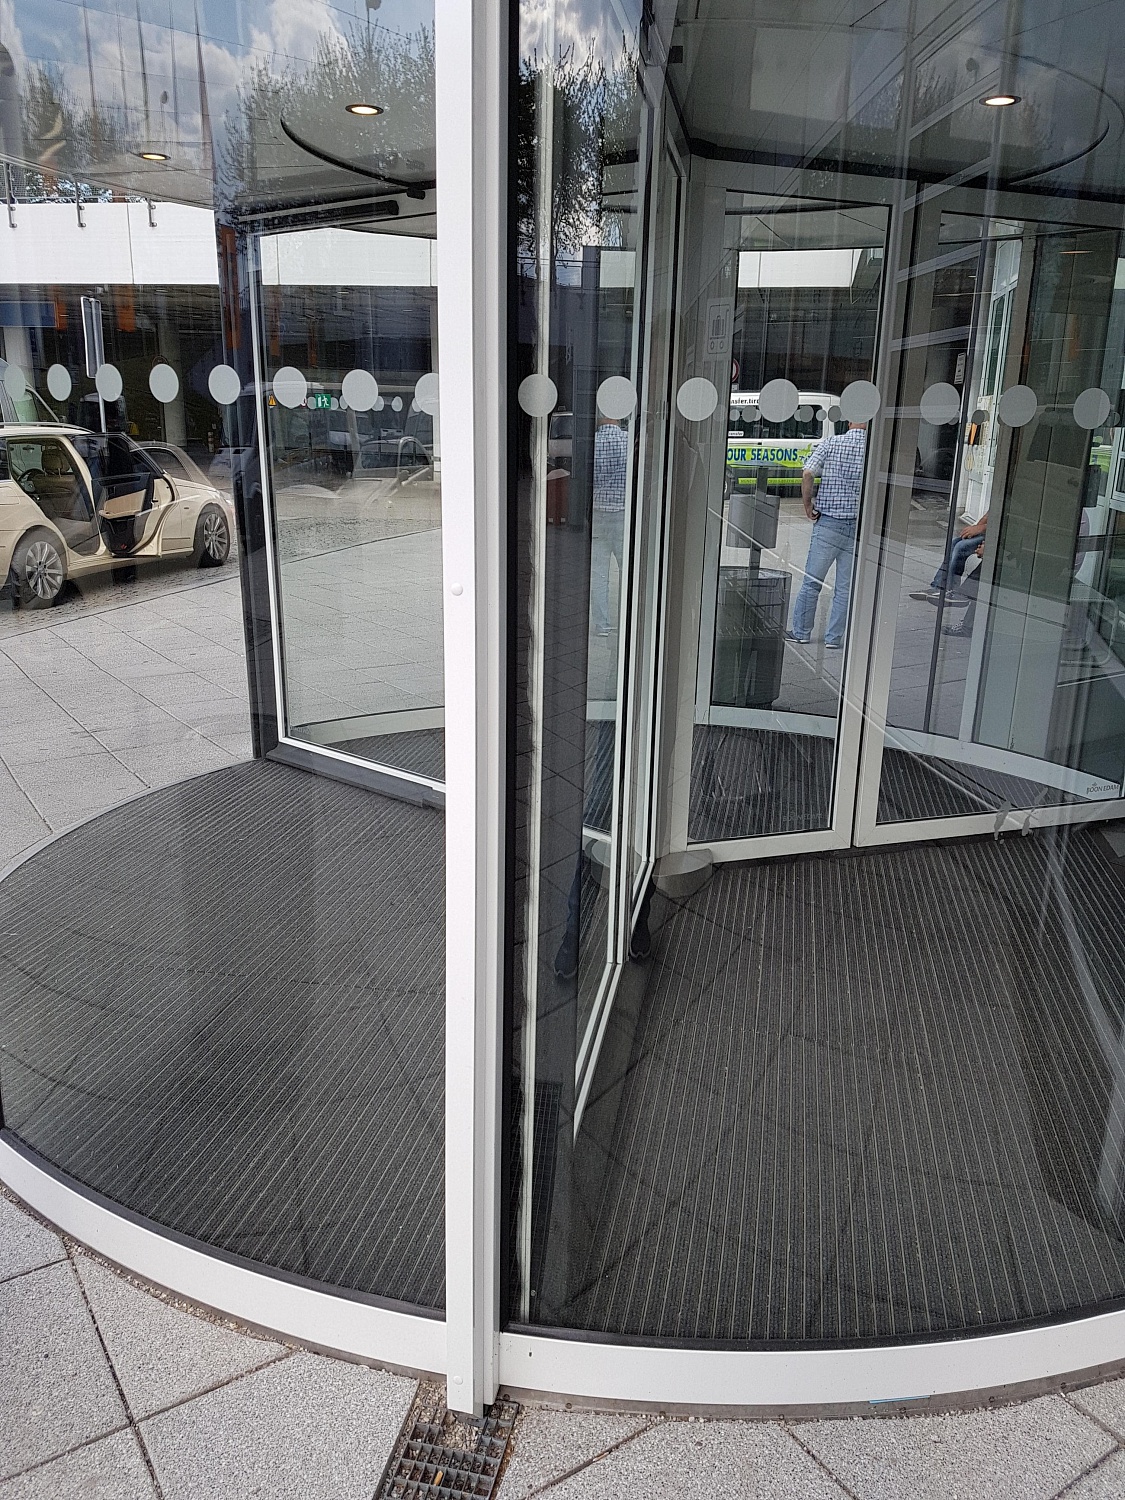 Заказать установку автоматических дверей в Евпатории. Монтаж выполняется командой профессионалов с опытом работы более 9 лет. 